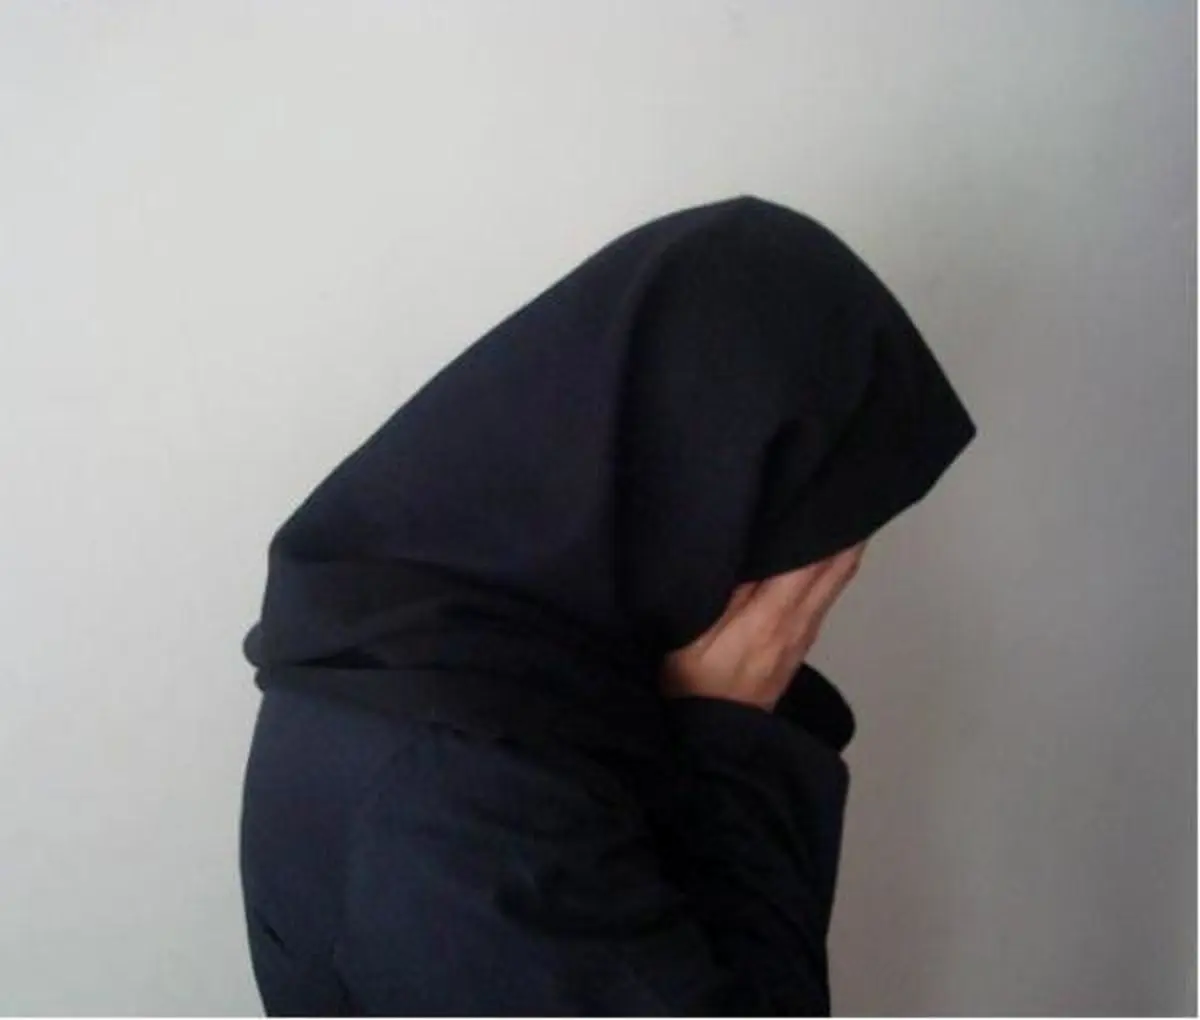 اختلافات خانوادگی عامل انتشار تصاویر دختر شیرازی شد